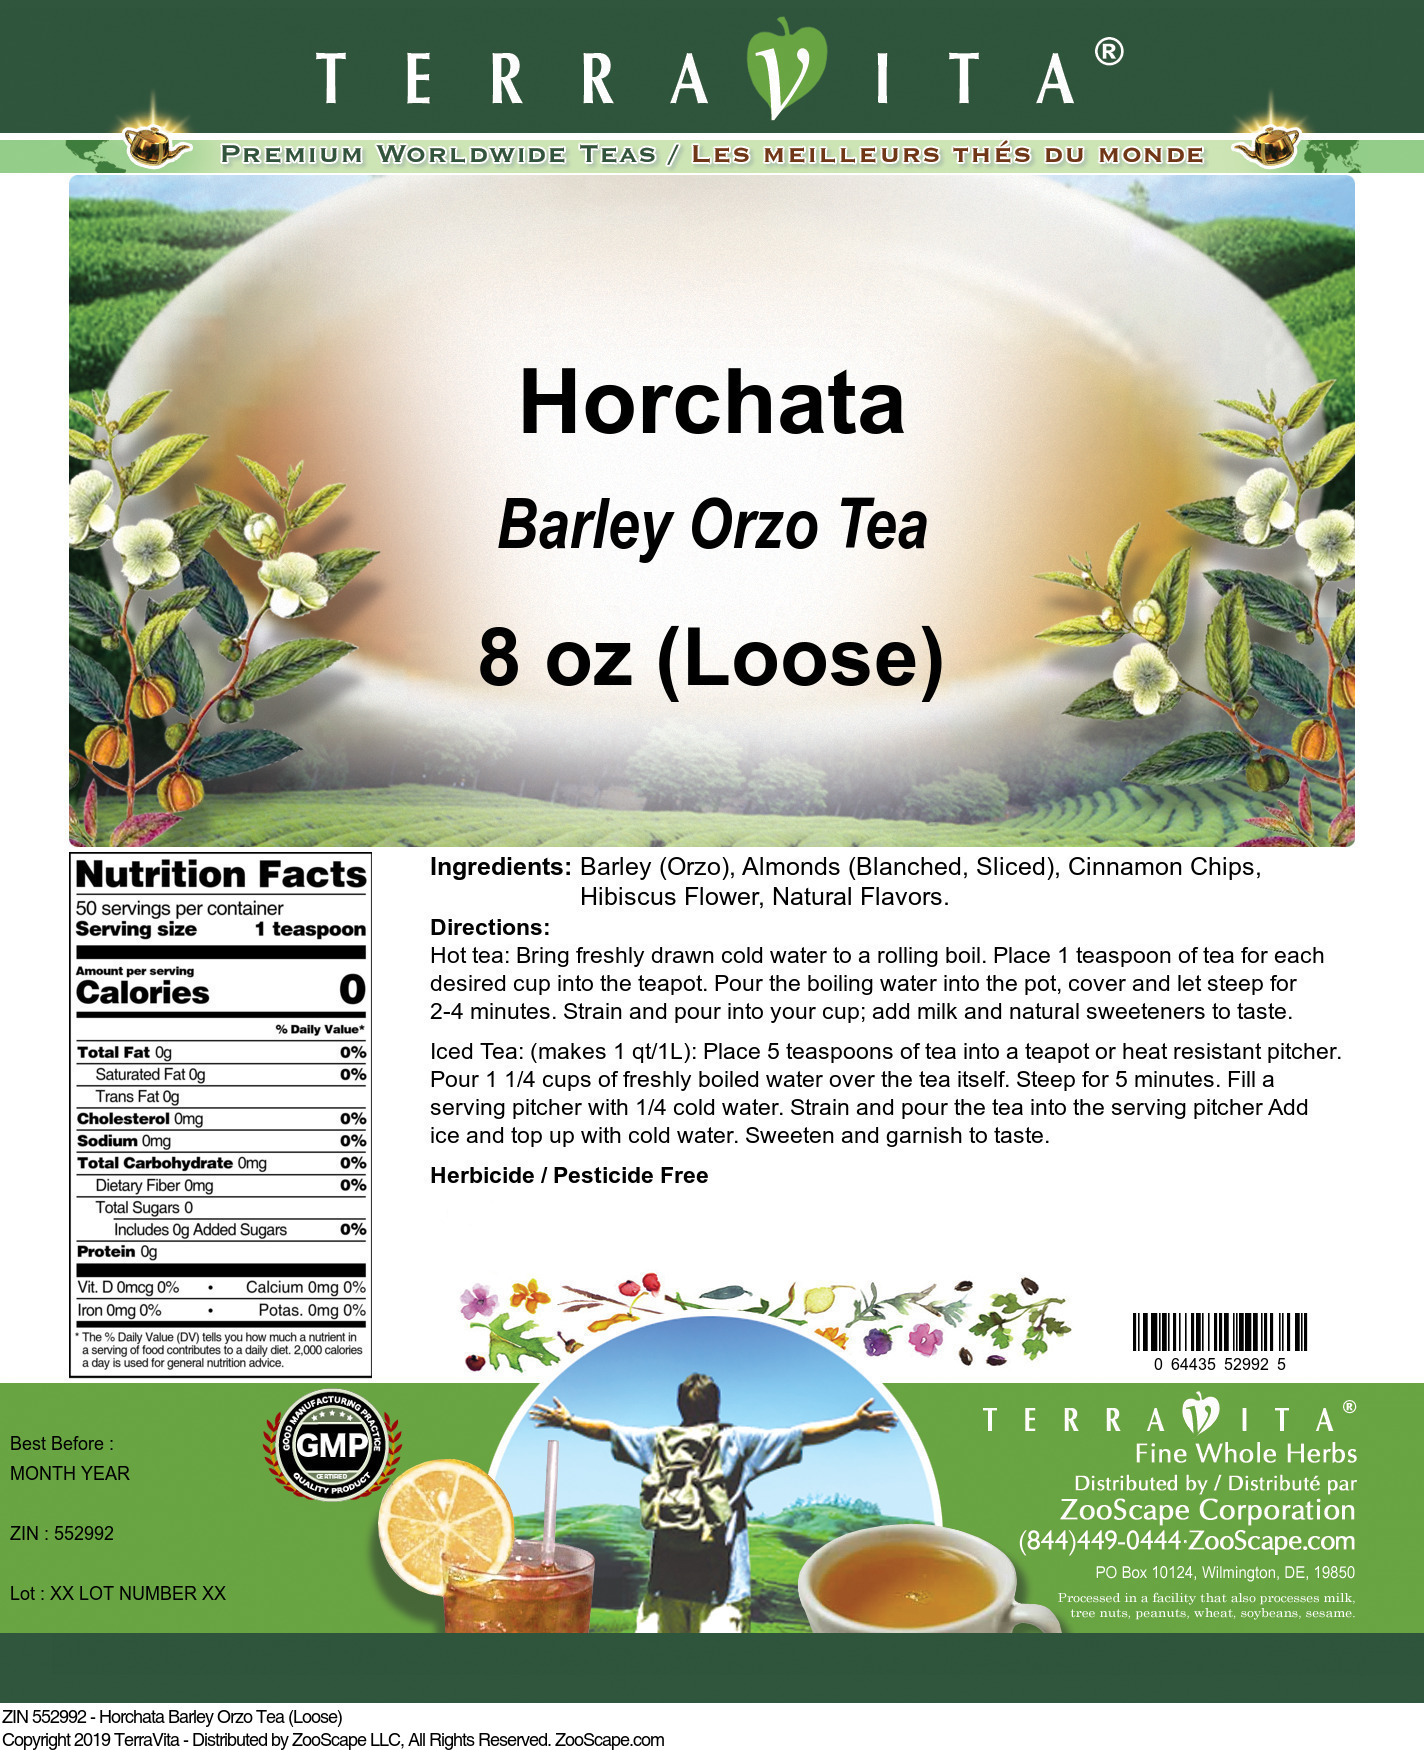 Horchata Barley Orzo Tea (Loose) - Label